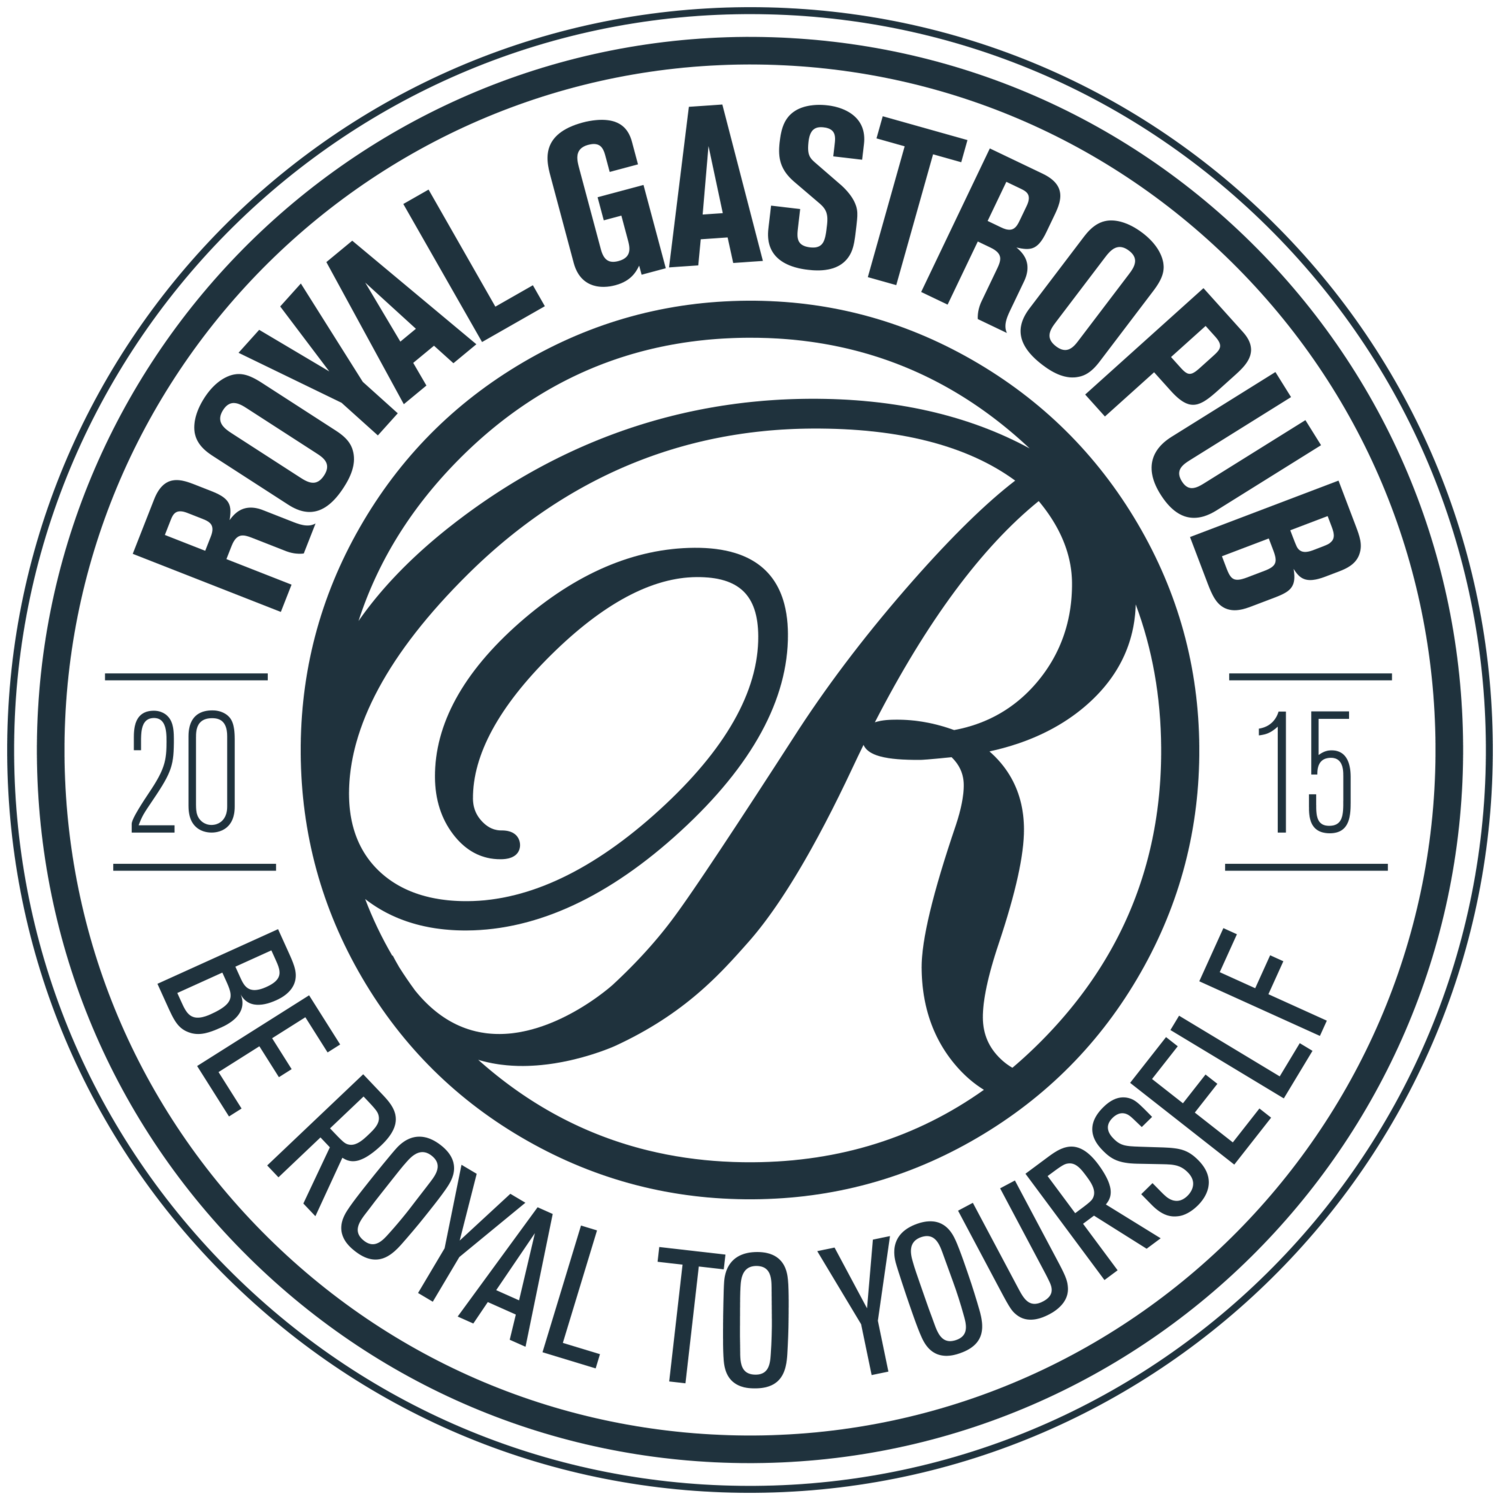 Royal Gastropub